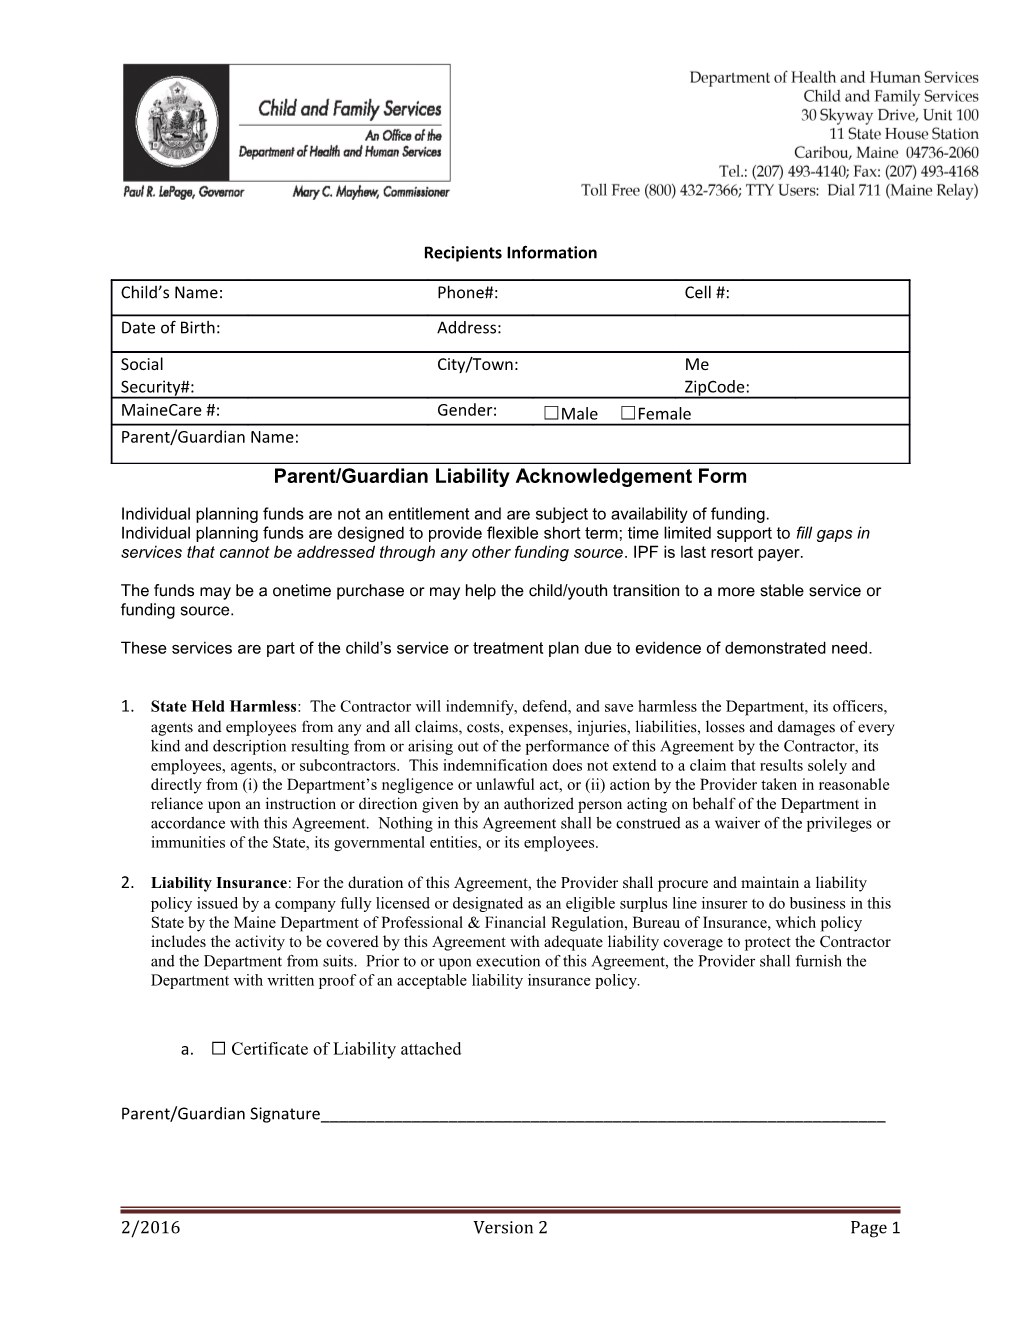 Parent/Guardian Liability Acknowledgement Form